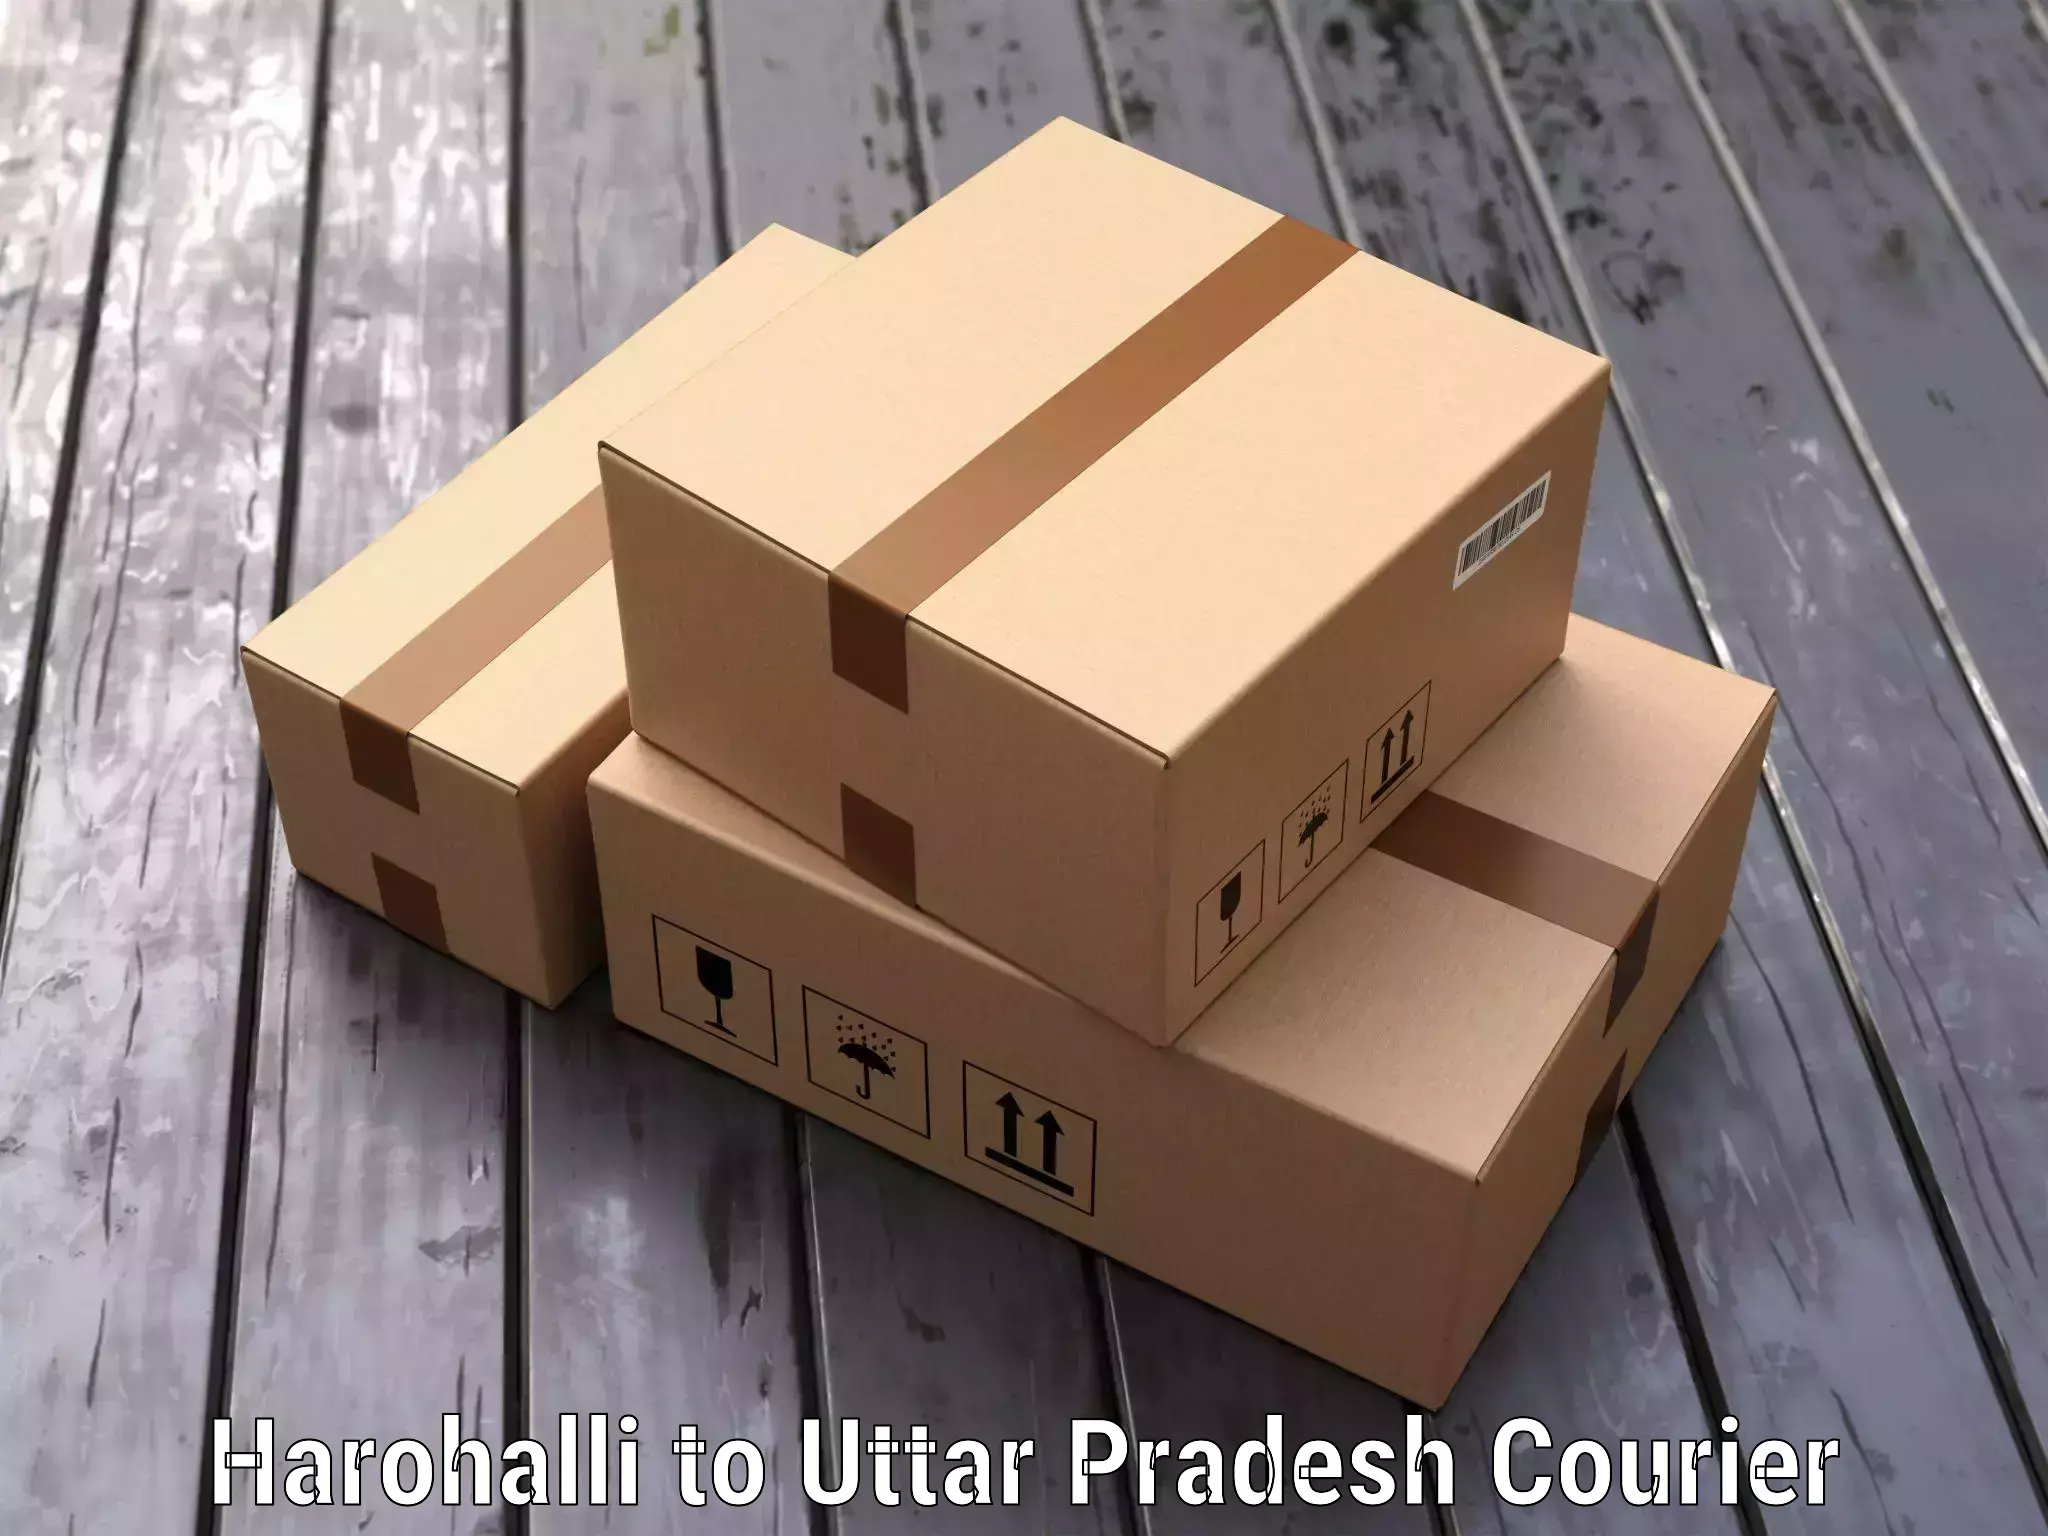 Luggage delivery system Harohalli to Uttar Pradesh